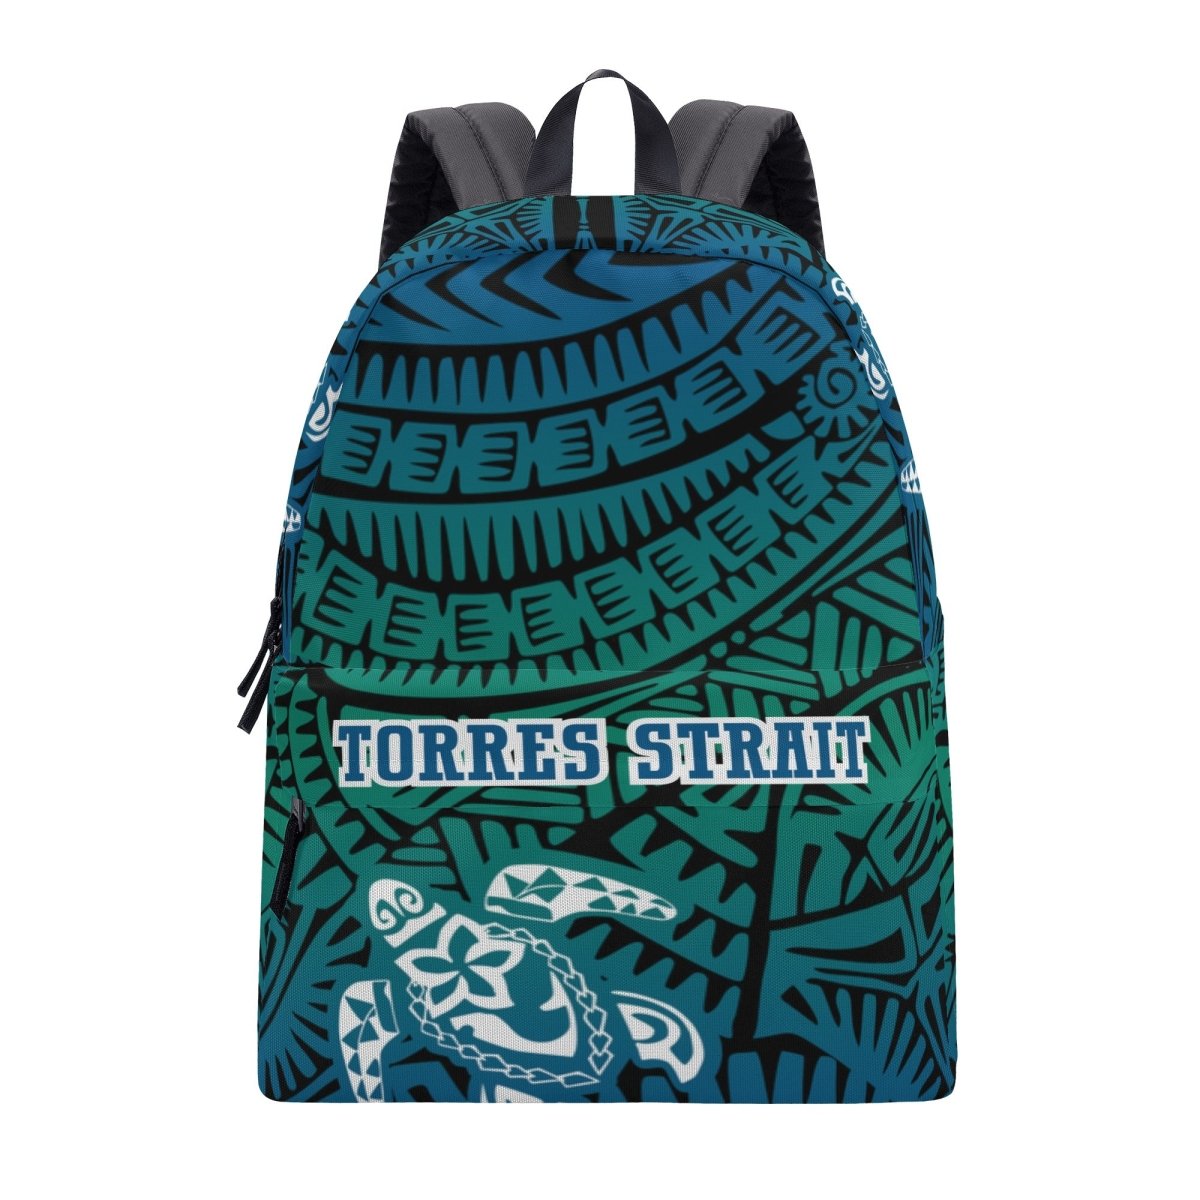 Torres Strait Backpack - Black - Nesian Kulture